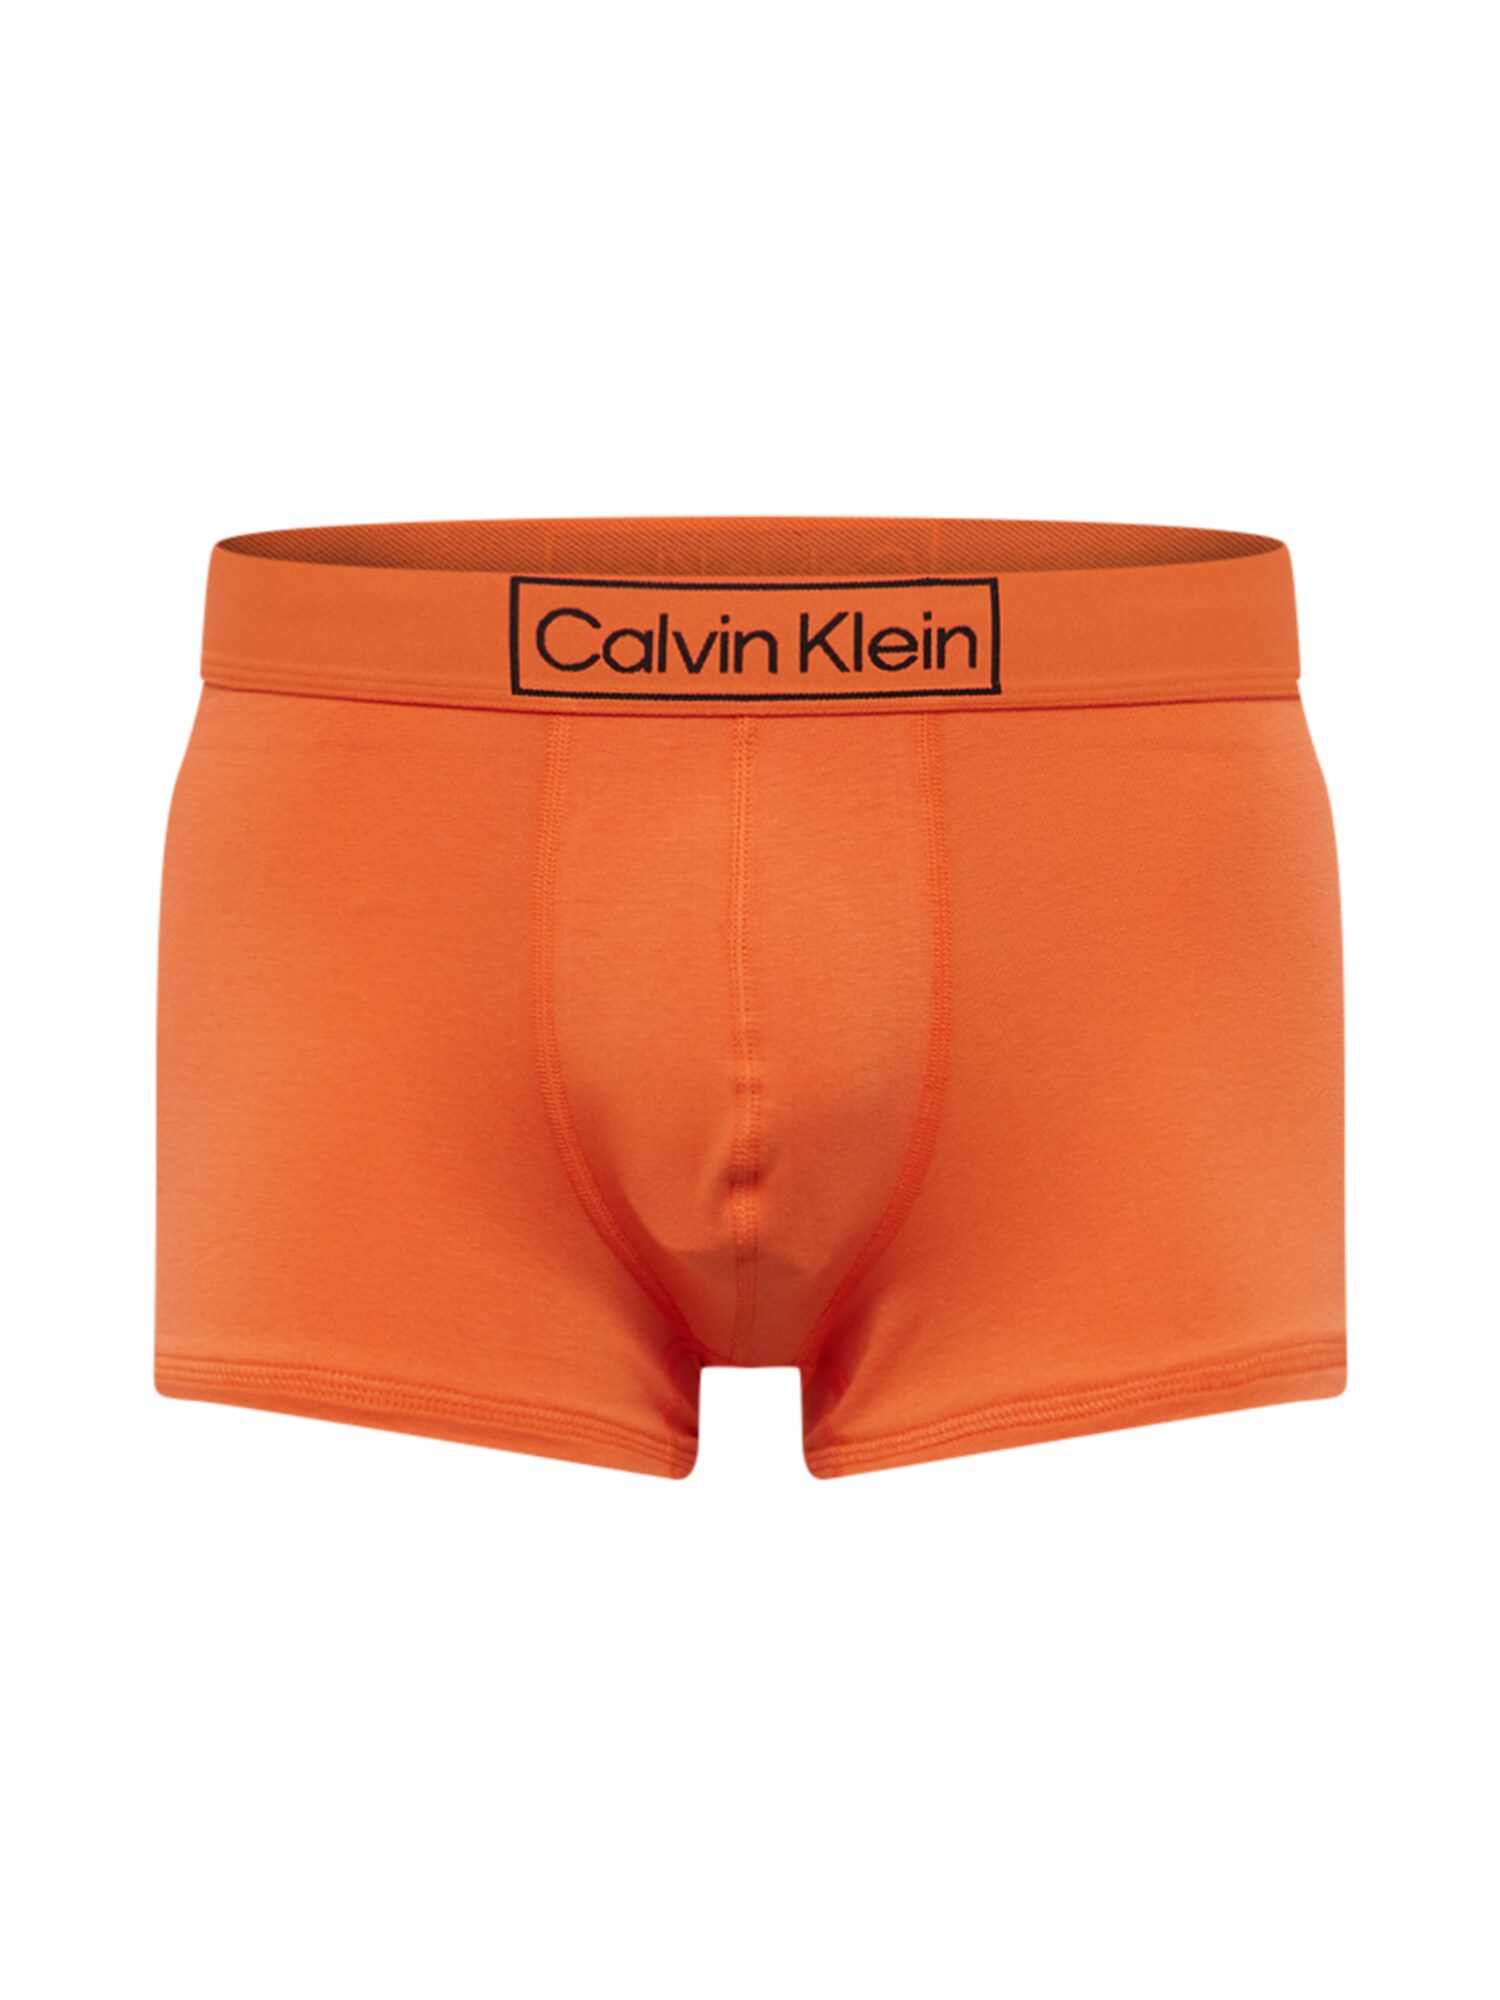 Calvin Klein Underwear Boxershorts orange / schwarz